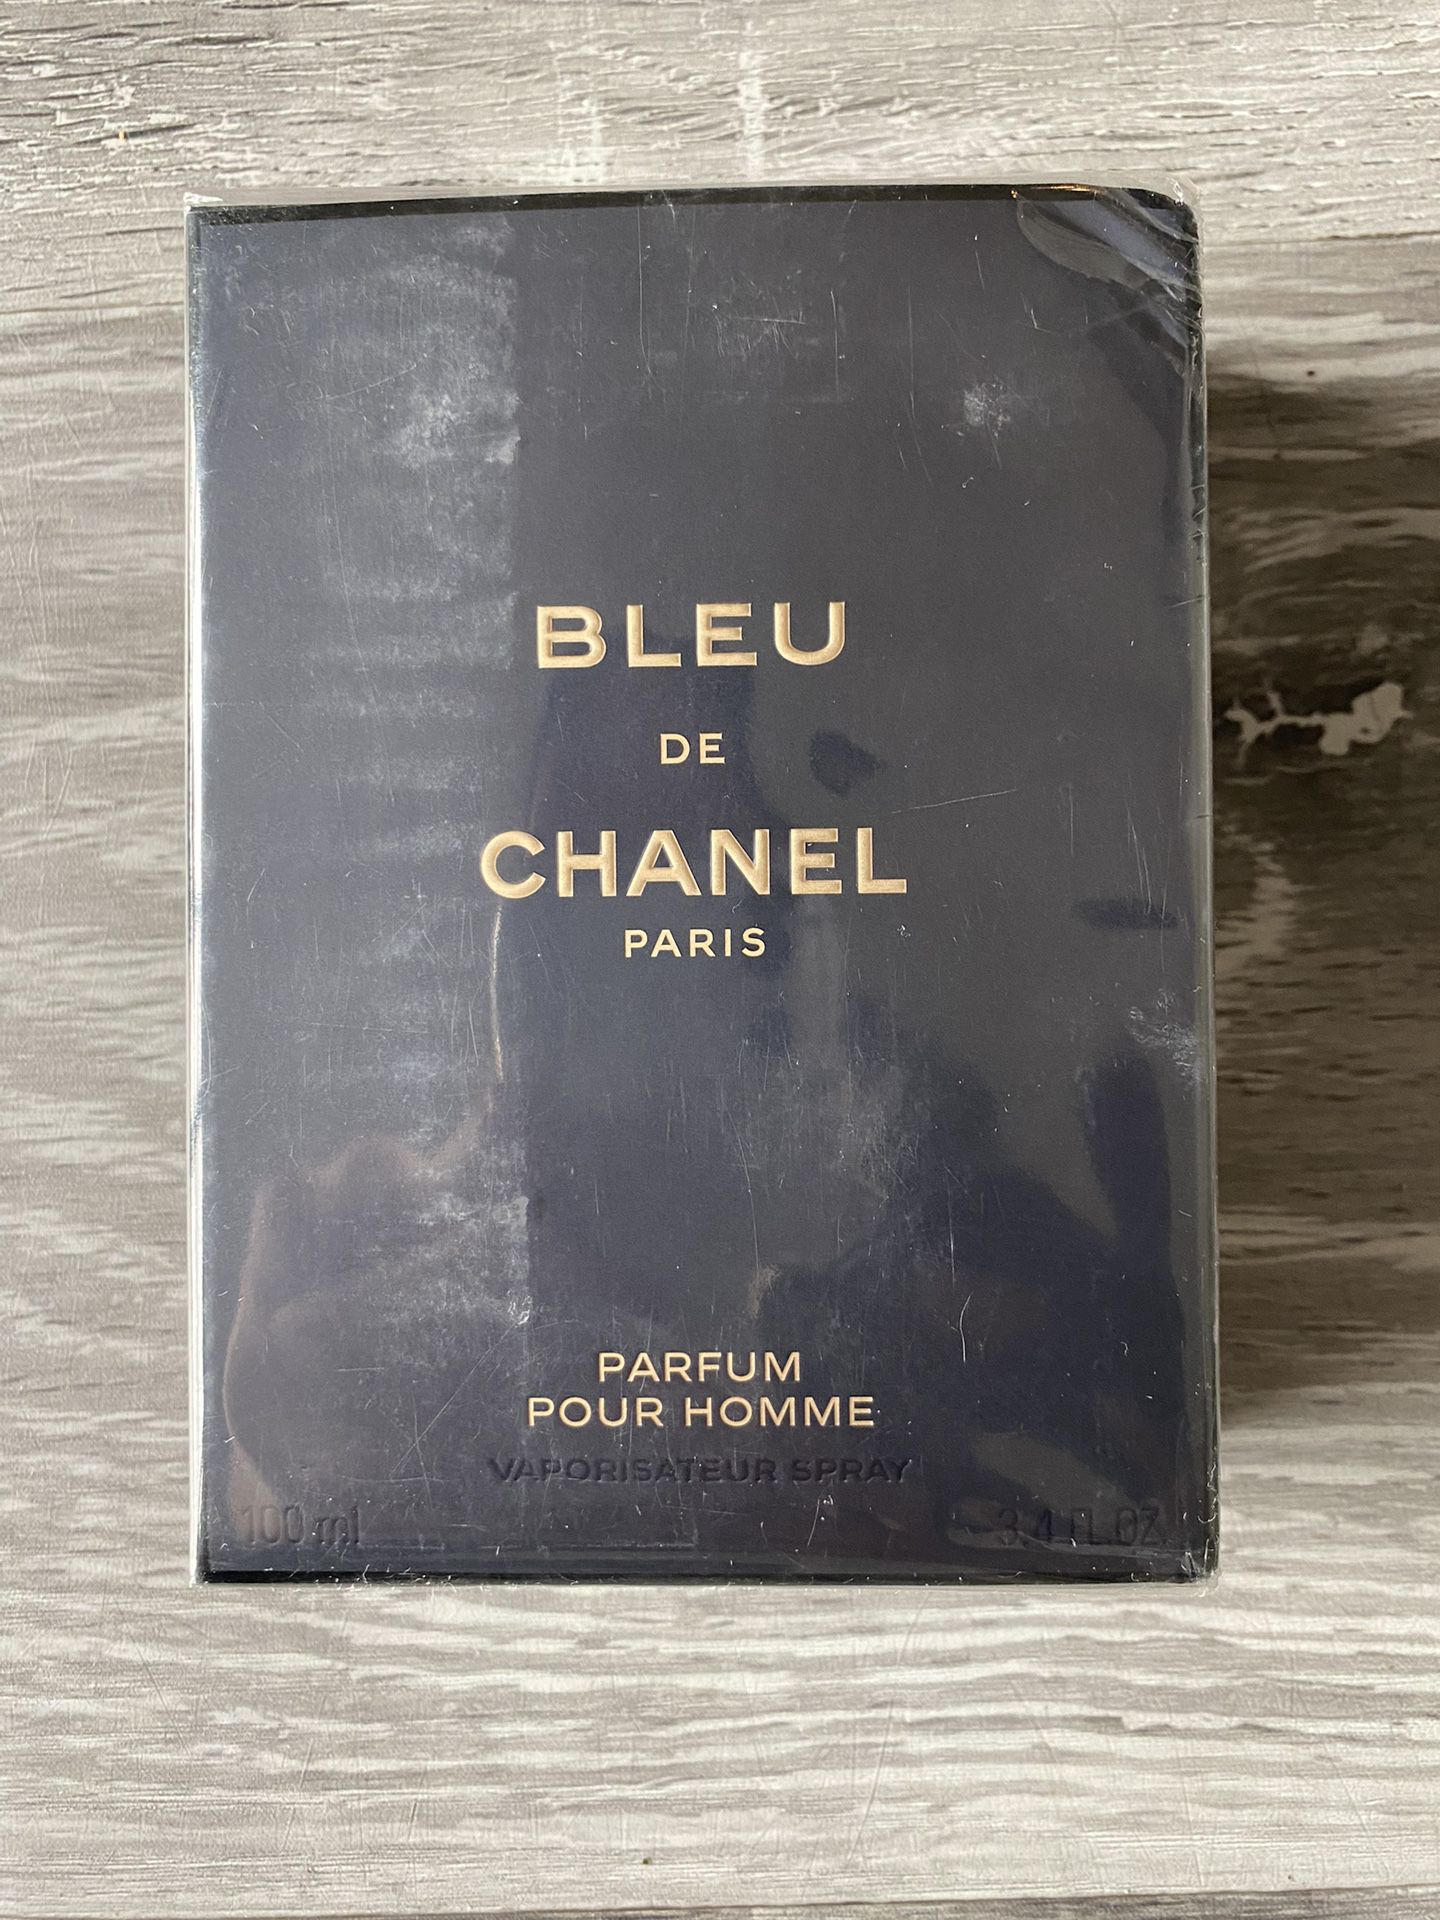 Chanel Bleu De Chanel Parfum 3.4fl Oz for Sale in Fairview, OR - OfferUp